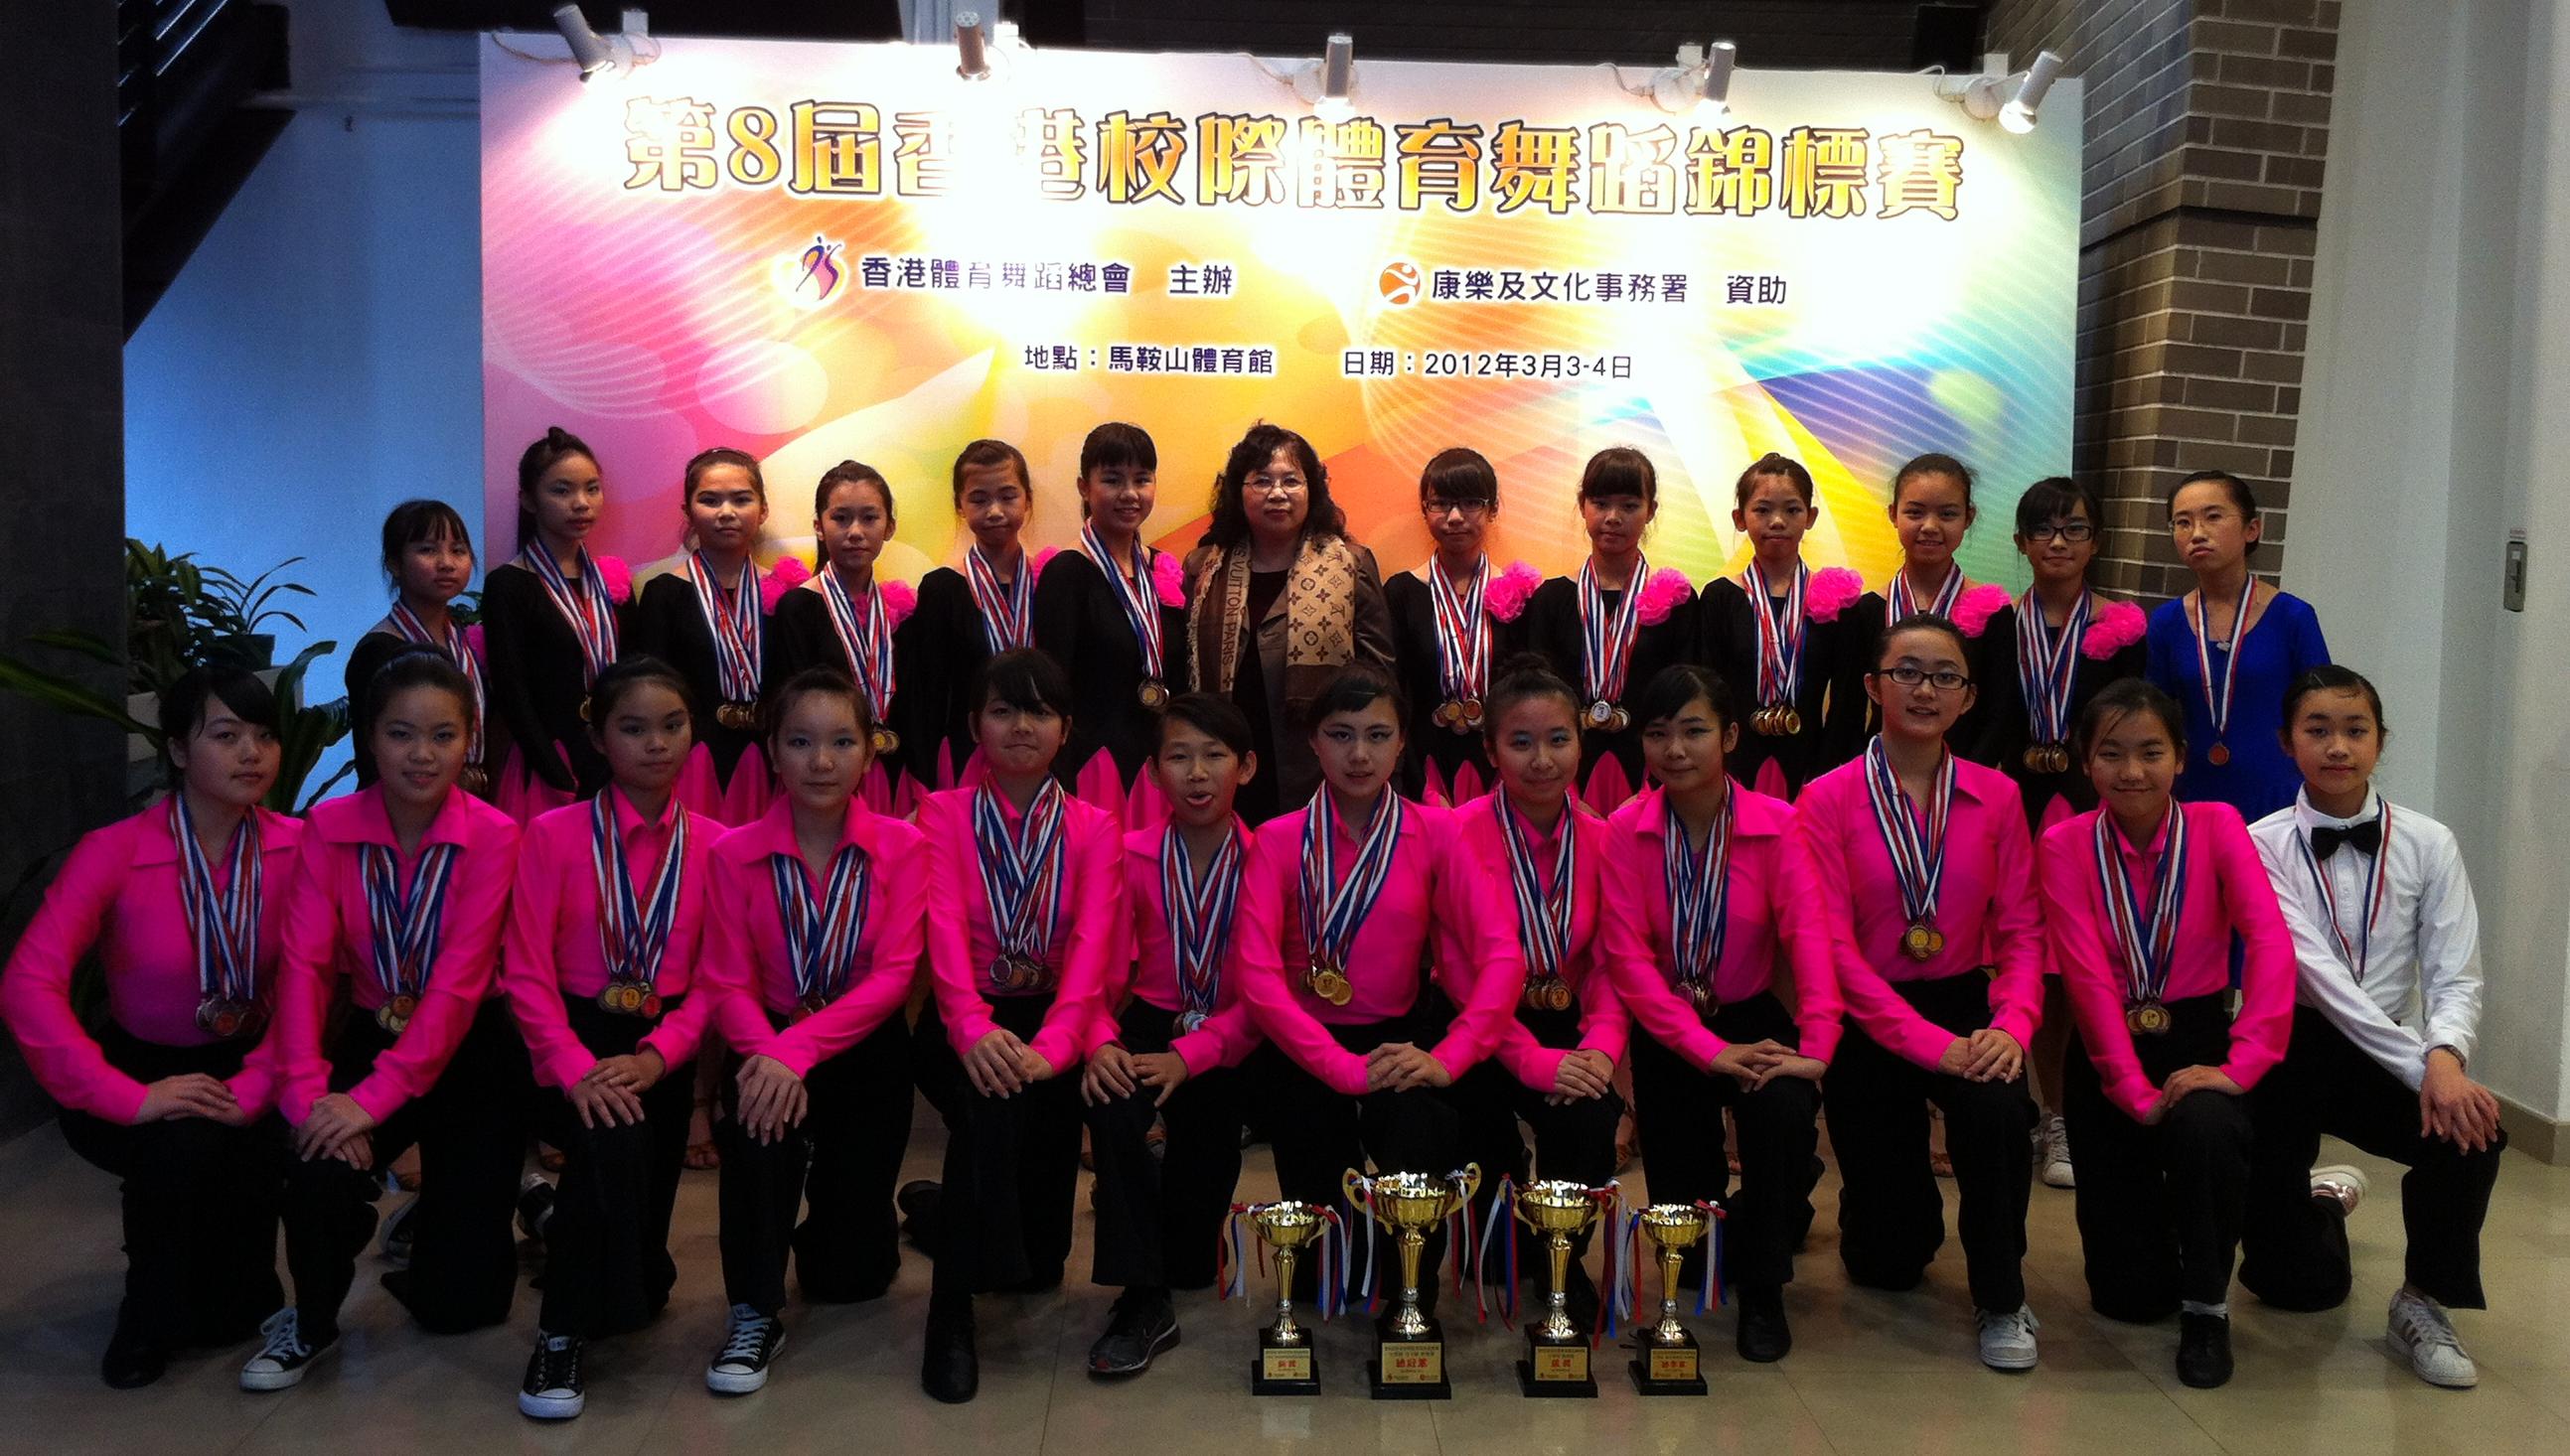 東華三院吳祥川紀念中學拉丁舞隊成立僅僅一年多已獲獎無數。